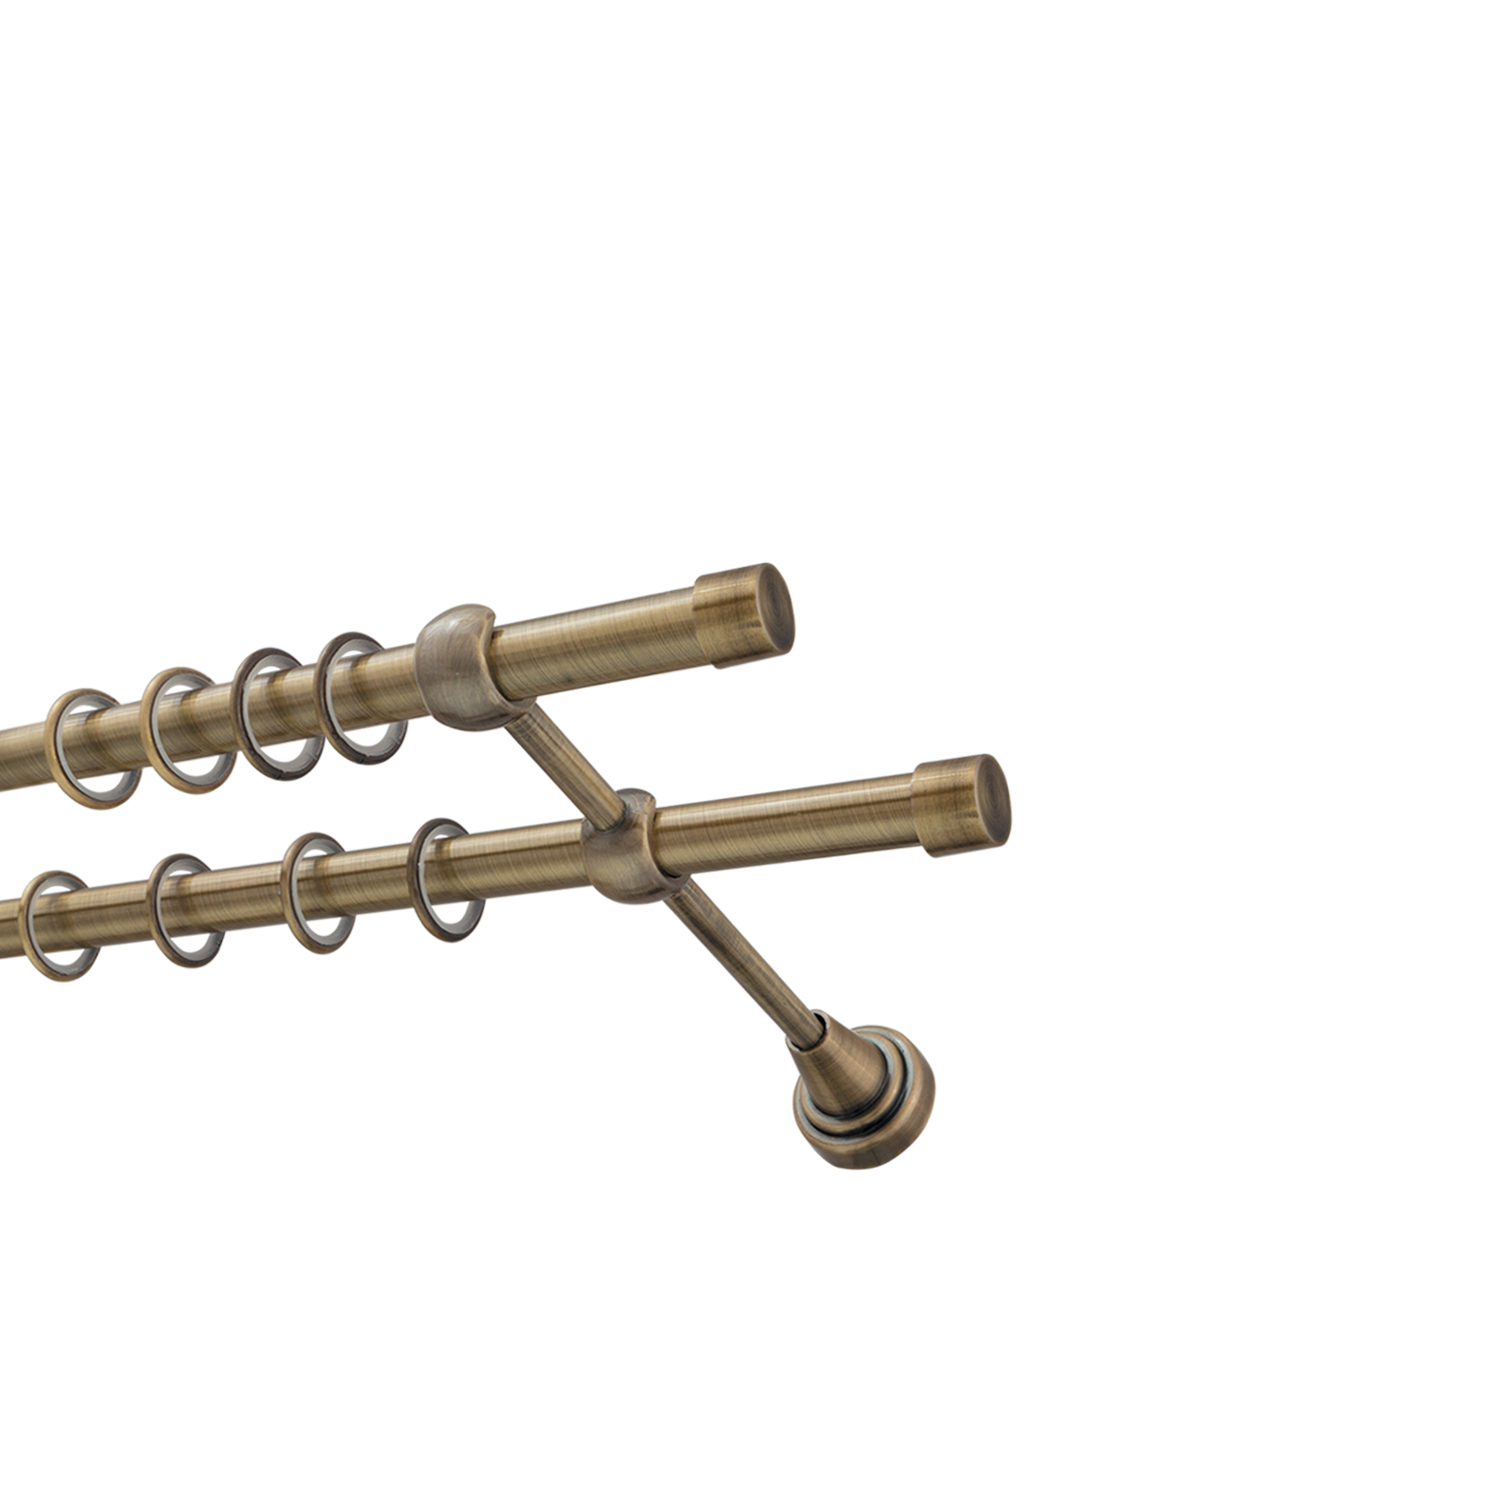 Металлический карниз для штор Заглушка, двухрядный 16/16 мм, бронза, гладкая штанга, длина 180 см - фото Wikidecor.ru